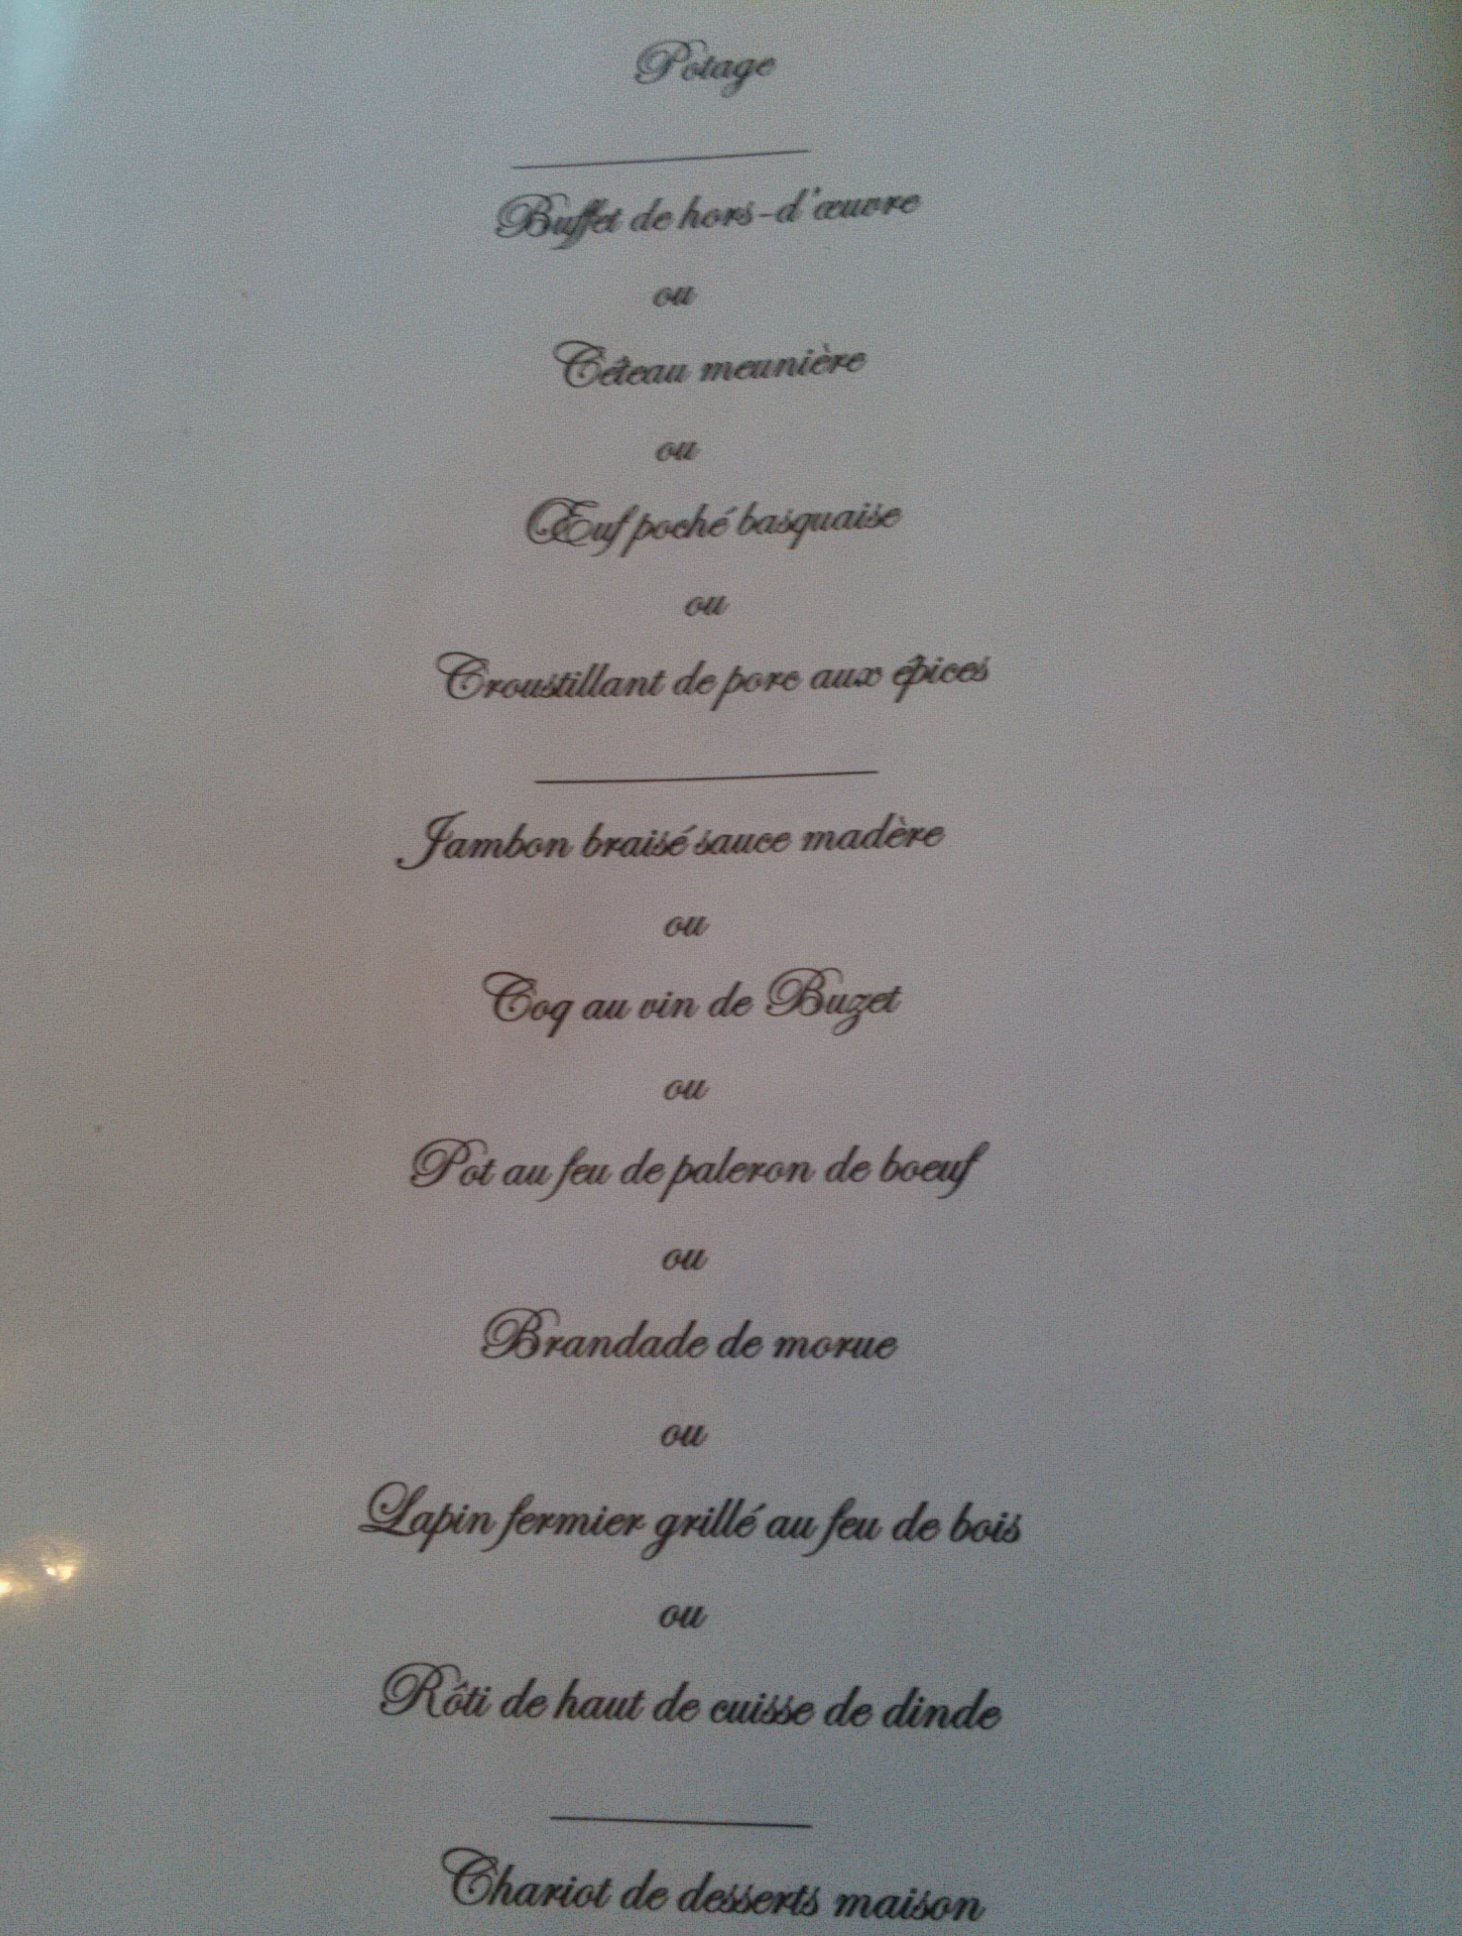 Le menu à 14.90€ du restaurant Le Vigneron (Crédit: Yanik)